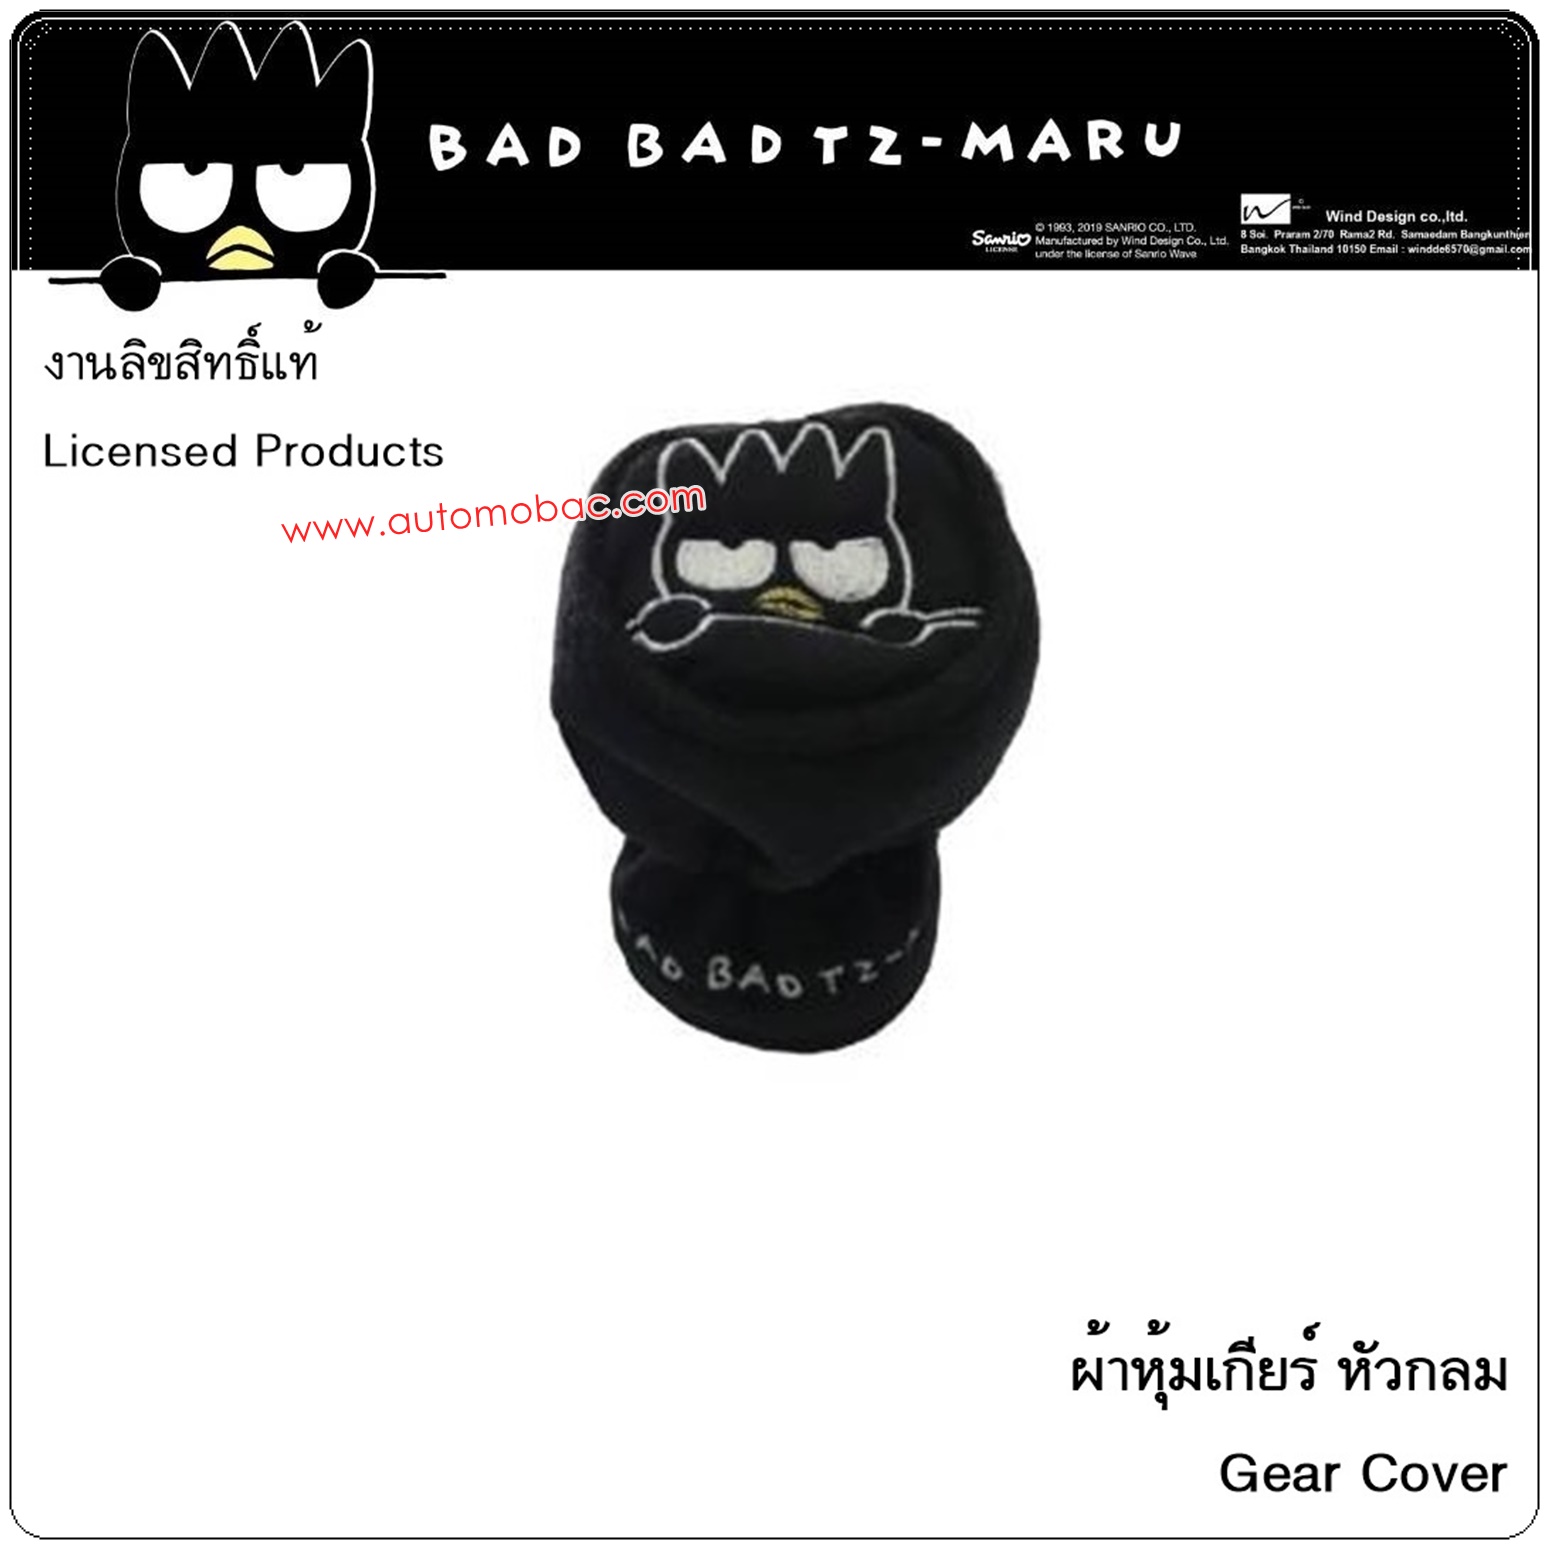 Bad Badtz-Maru BLACK แบดมารุ สีดำ ที่หุ้มเกียร์ แบบหัวกลม ลิขสิทธิ์แท้ ตกแต่งเพื่อความสวยงาม ซักได้